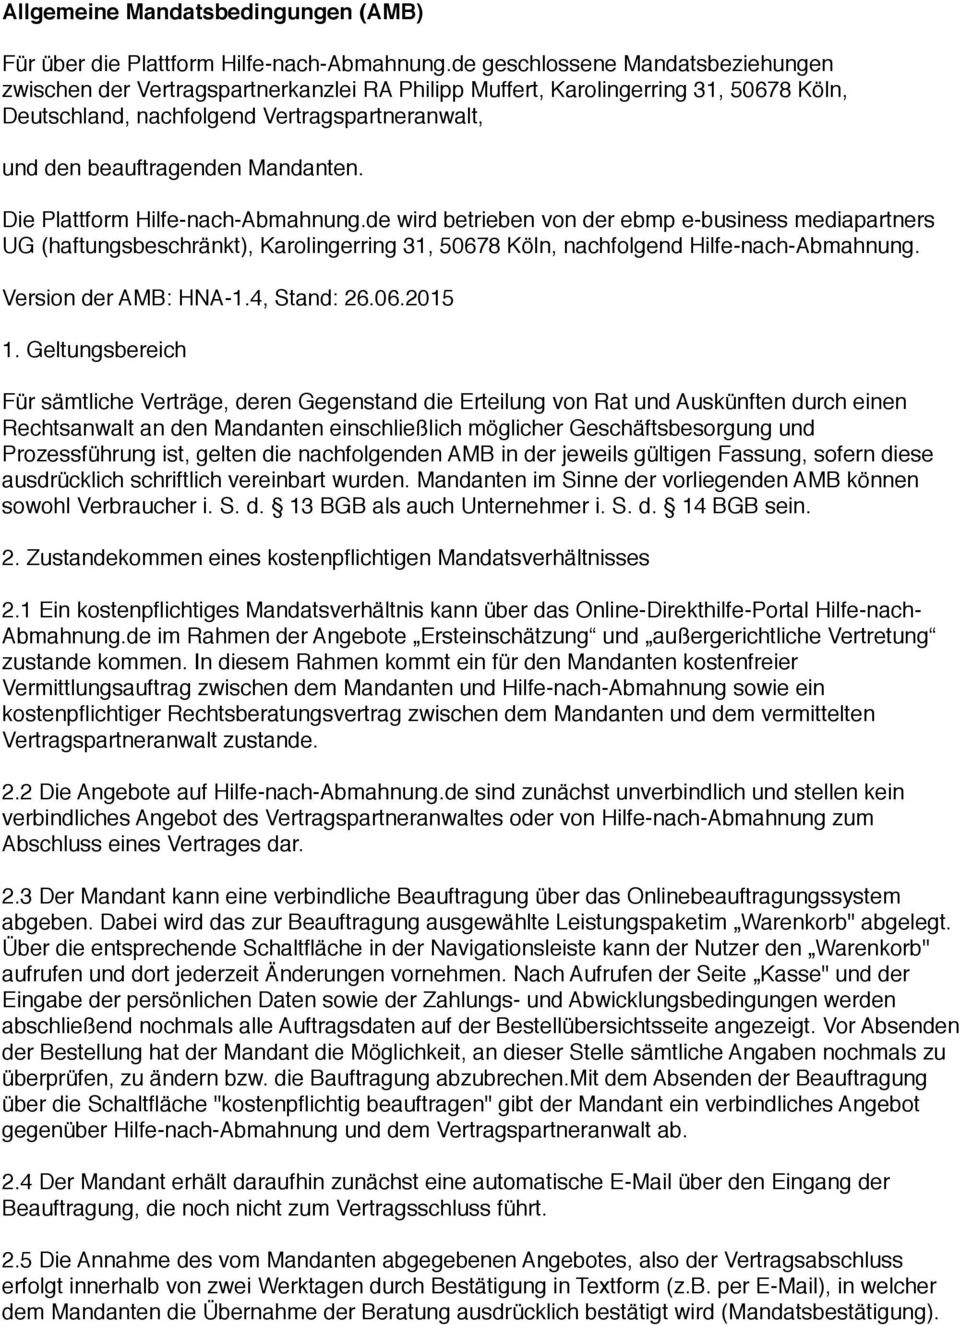 Mandanten. Die Plattform Hilfe-nach-Abmahnung.de wird betrieben von der ebmp e-business mediapartners UG (haftungsbeschränkt), Karolingerring 31, 50678 Köln, nachfolgend Hilfe-nach-Abmahnung.